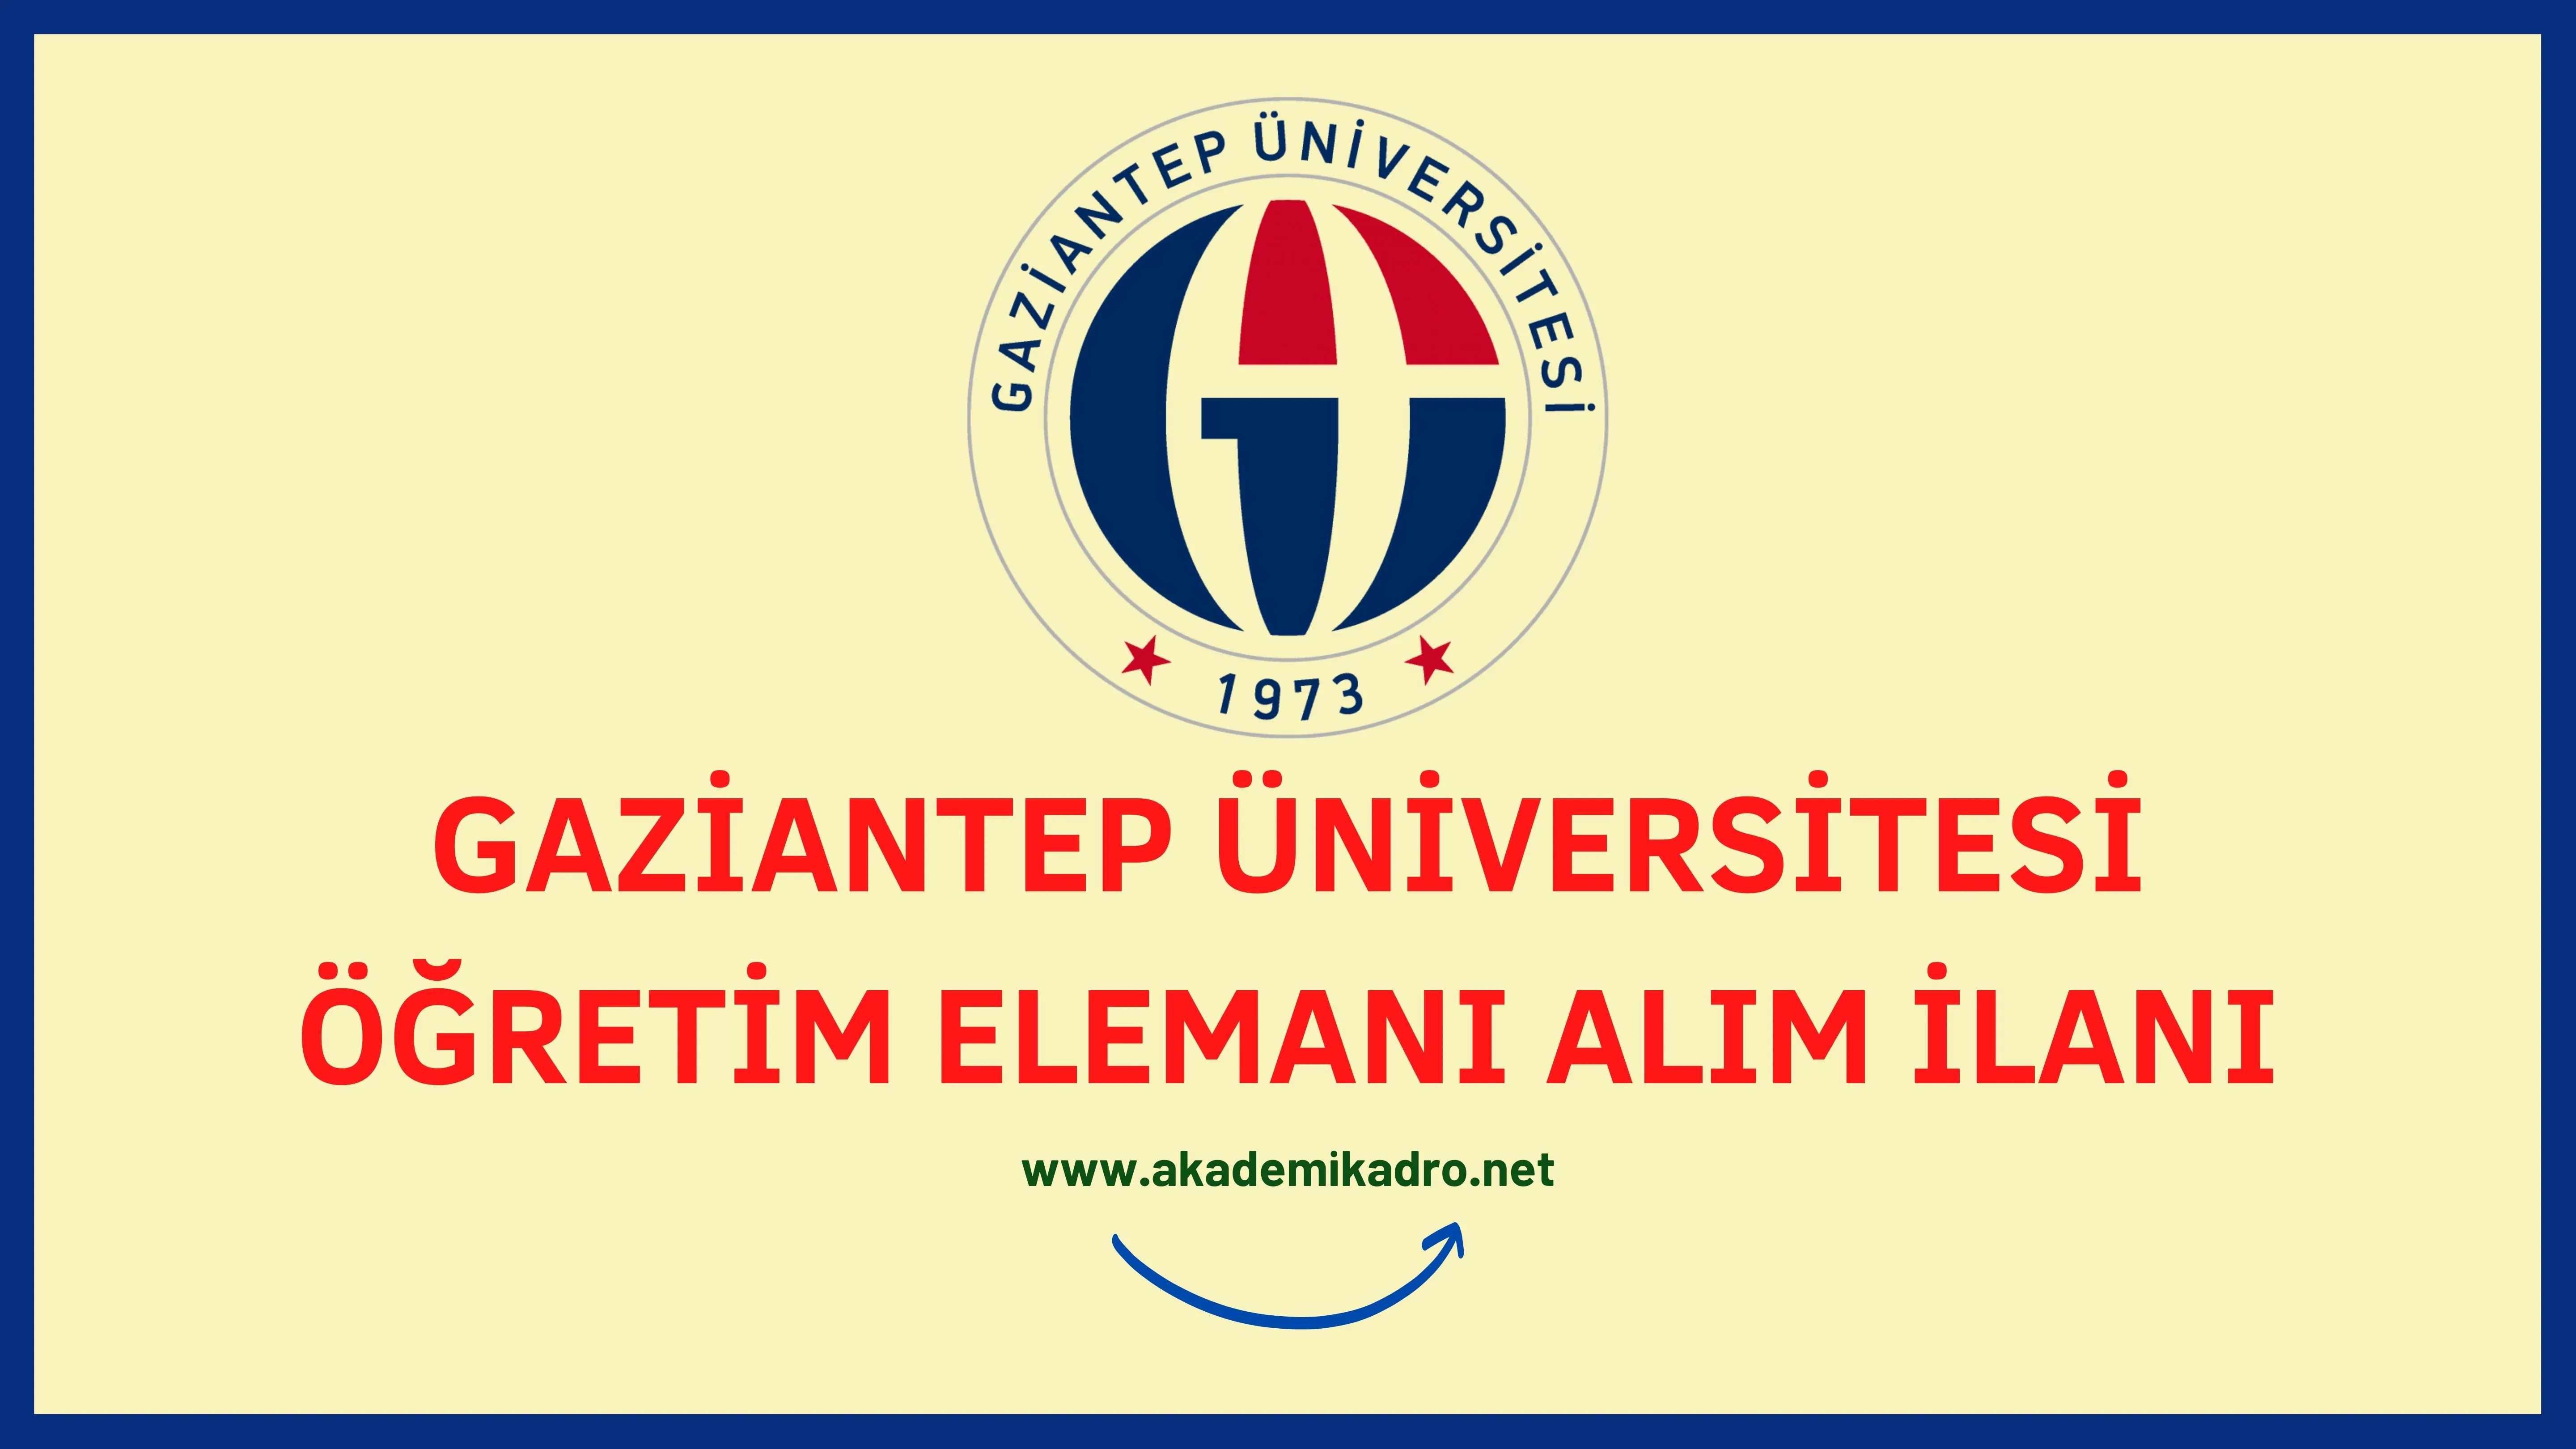 Gaziantep Üniversitesi Araştırma görevlisi, Öğretim görevlisi ve birçok alandan öğretim üyesi olmak üzere 29 Öğretim elemanı alacak.